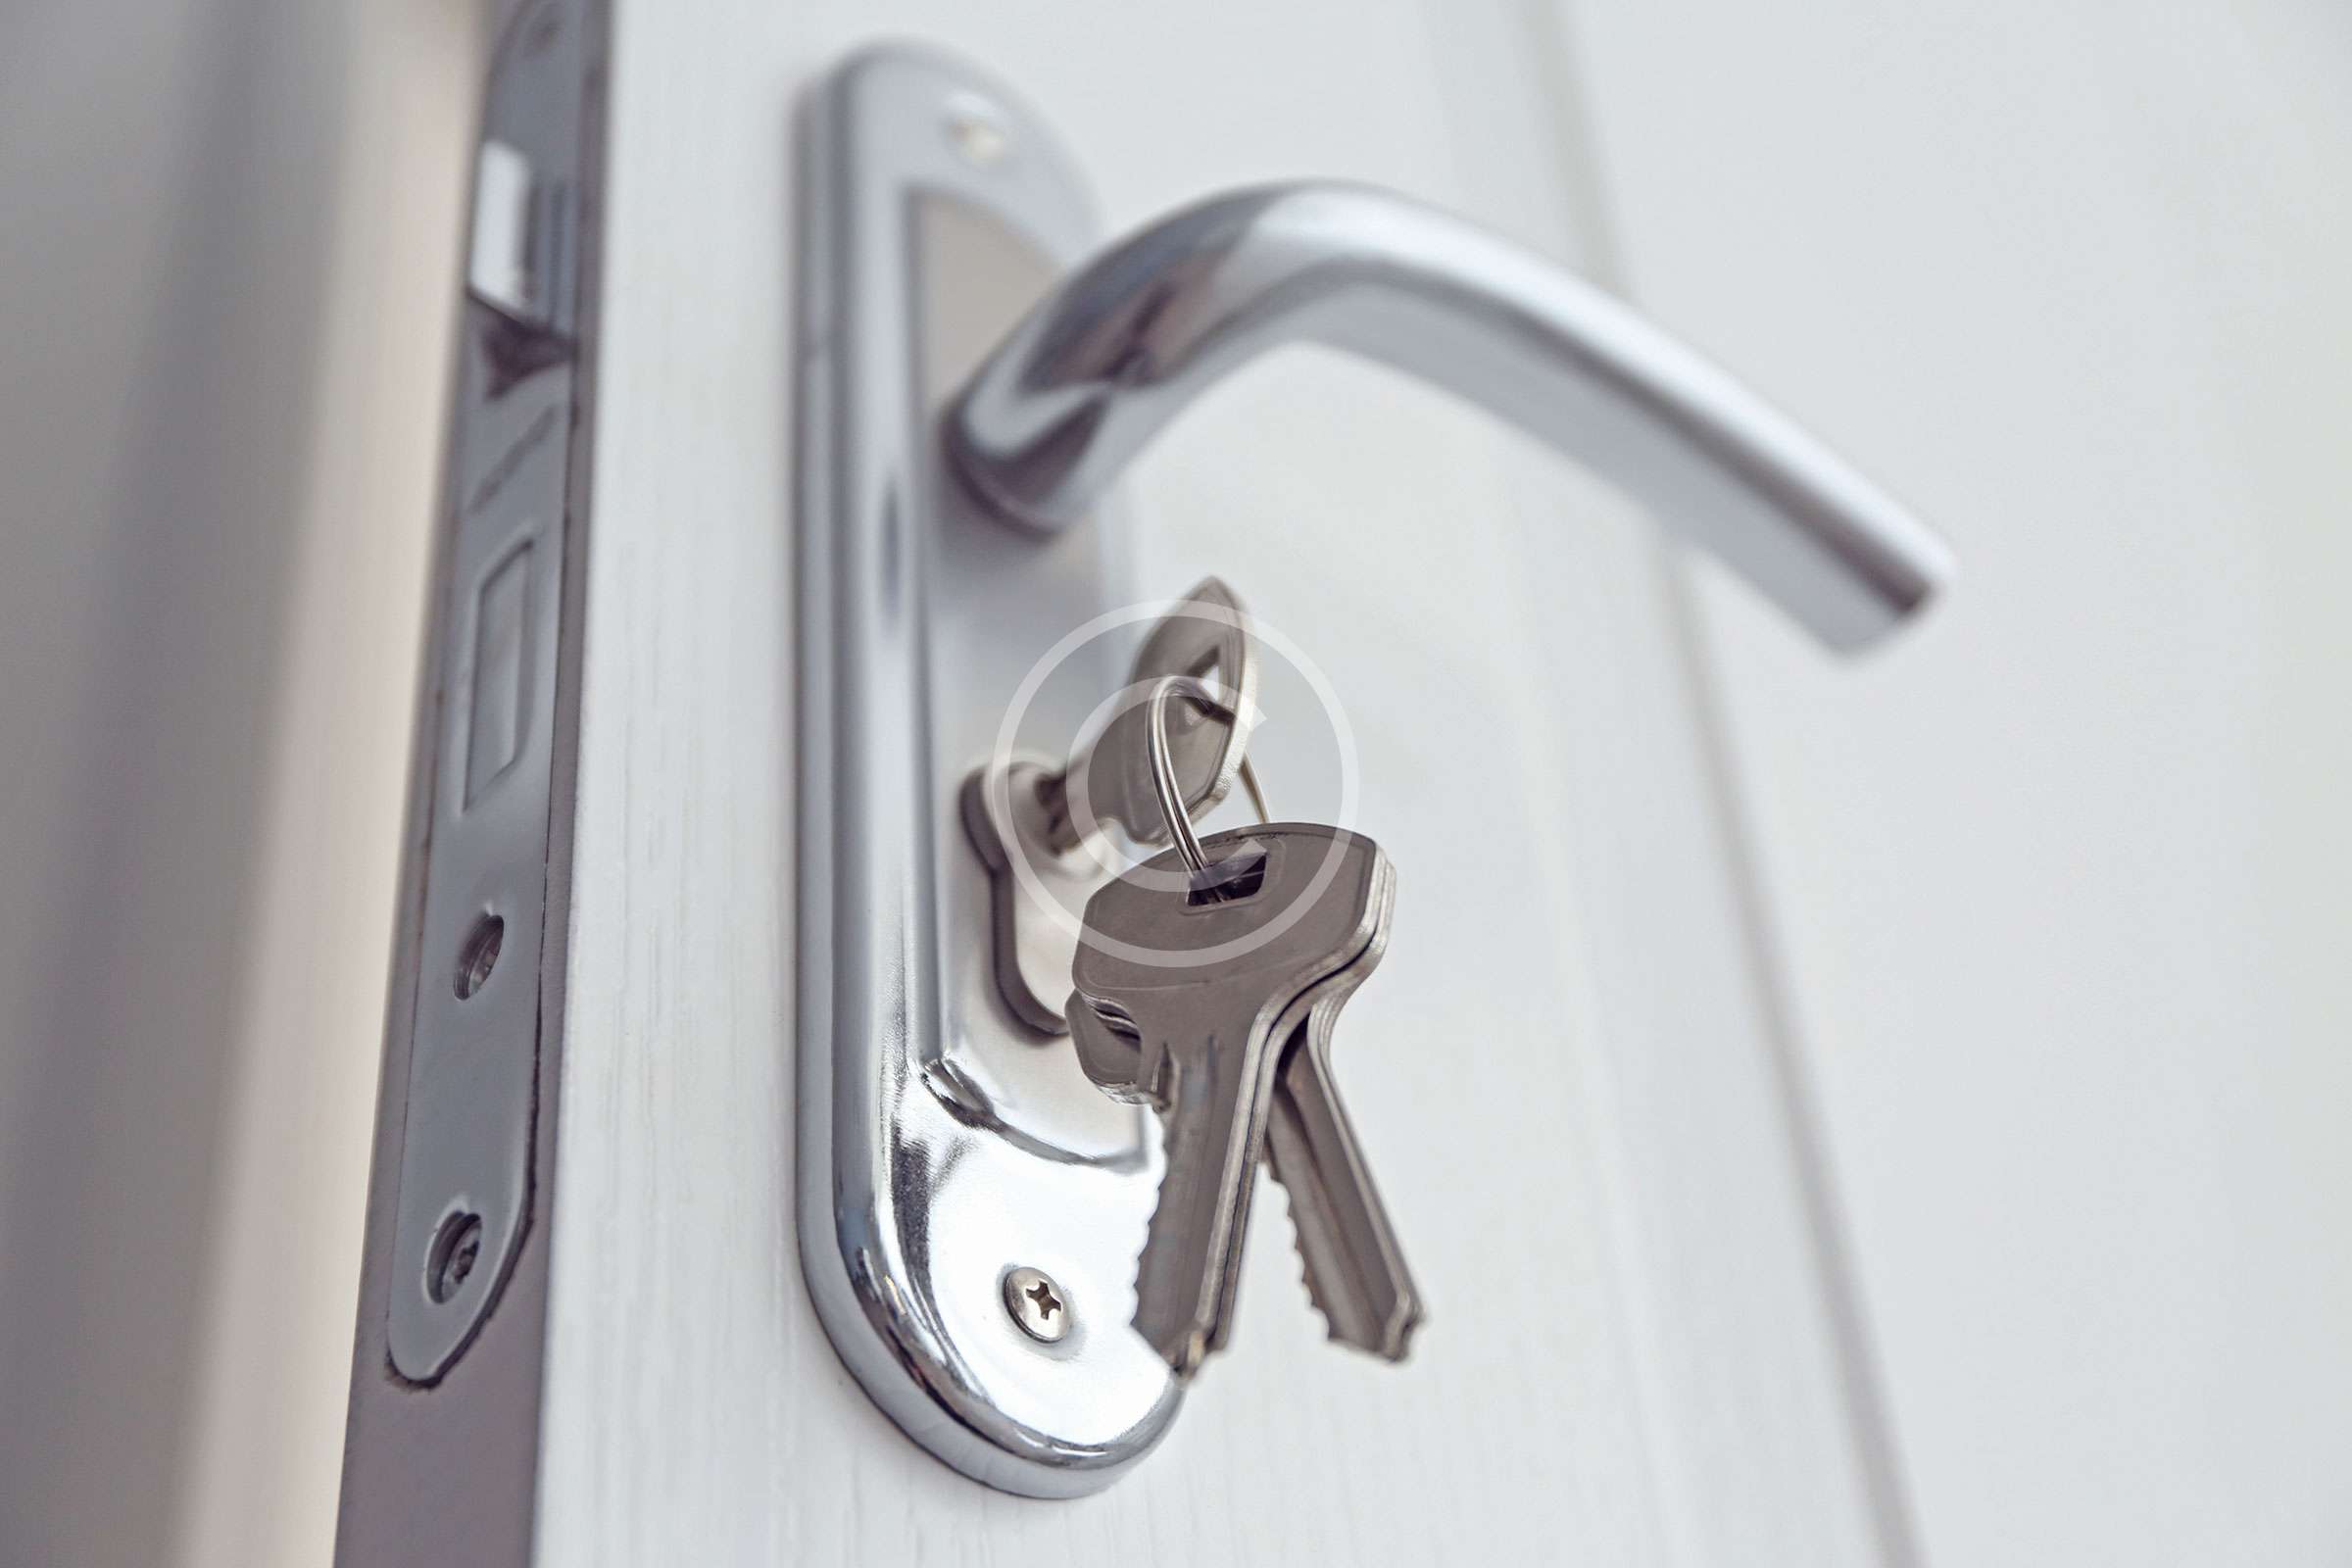 Keys Hanging In Door Lock